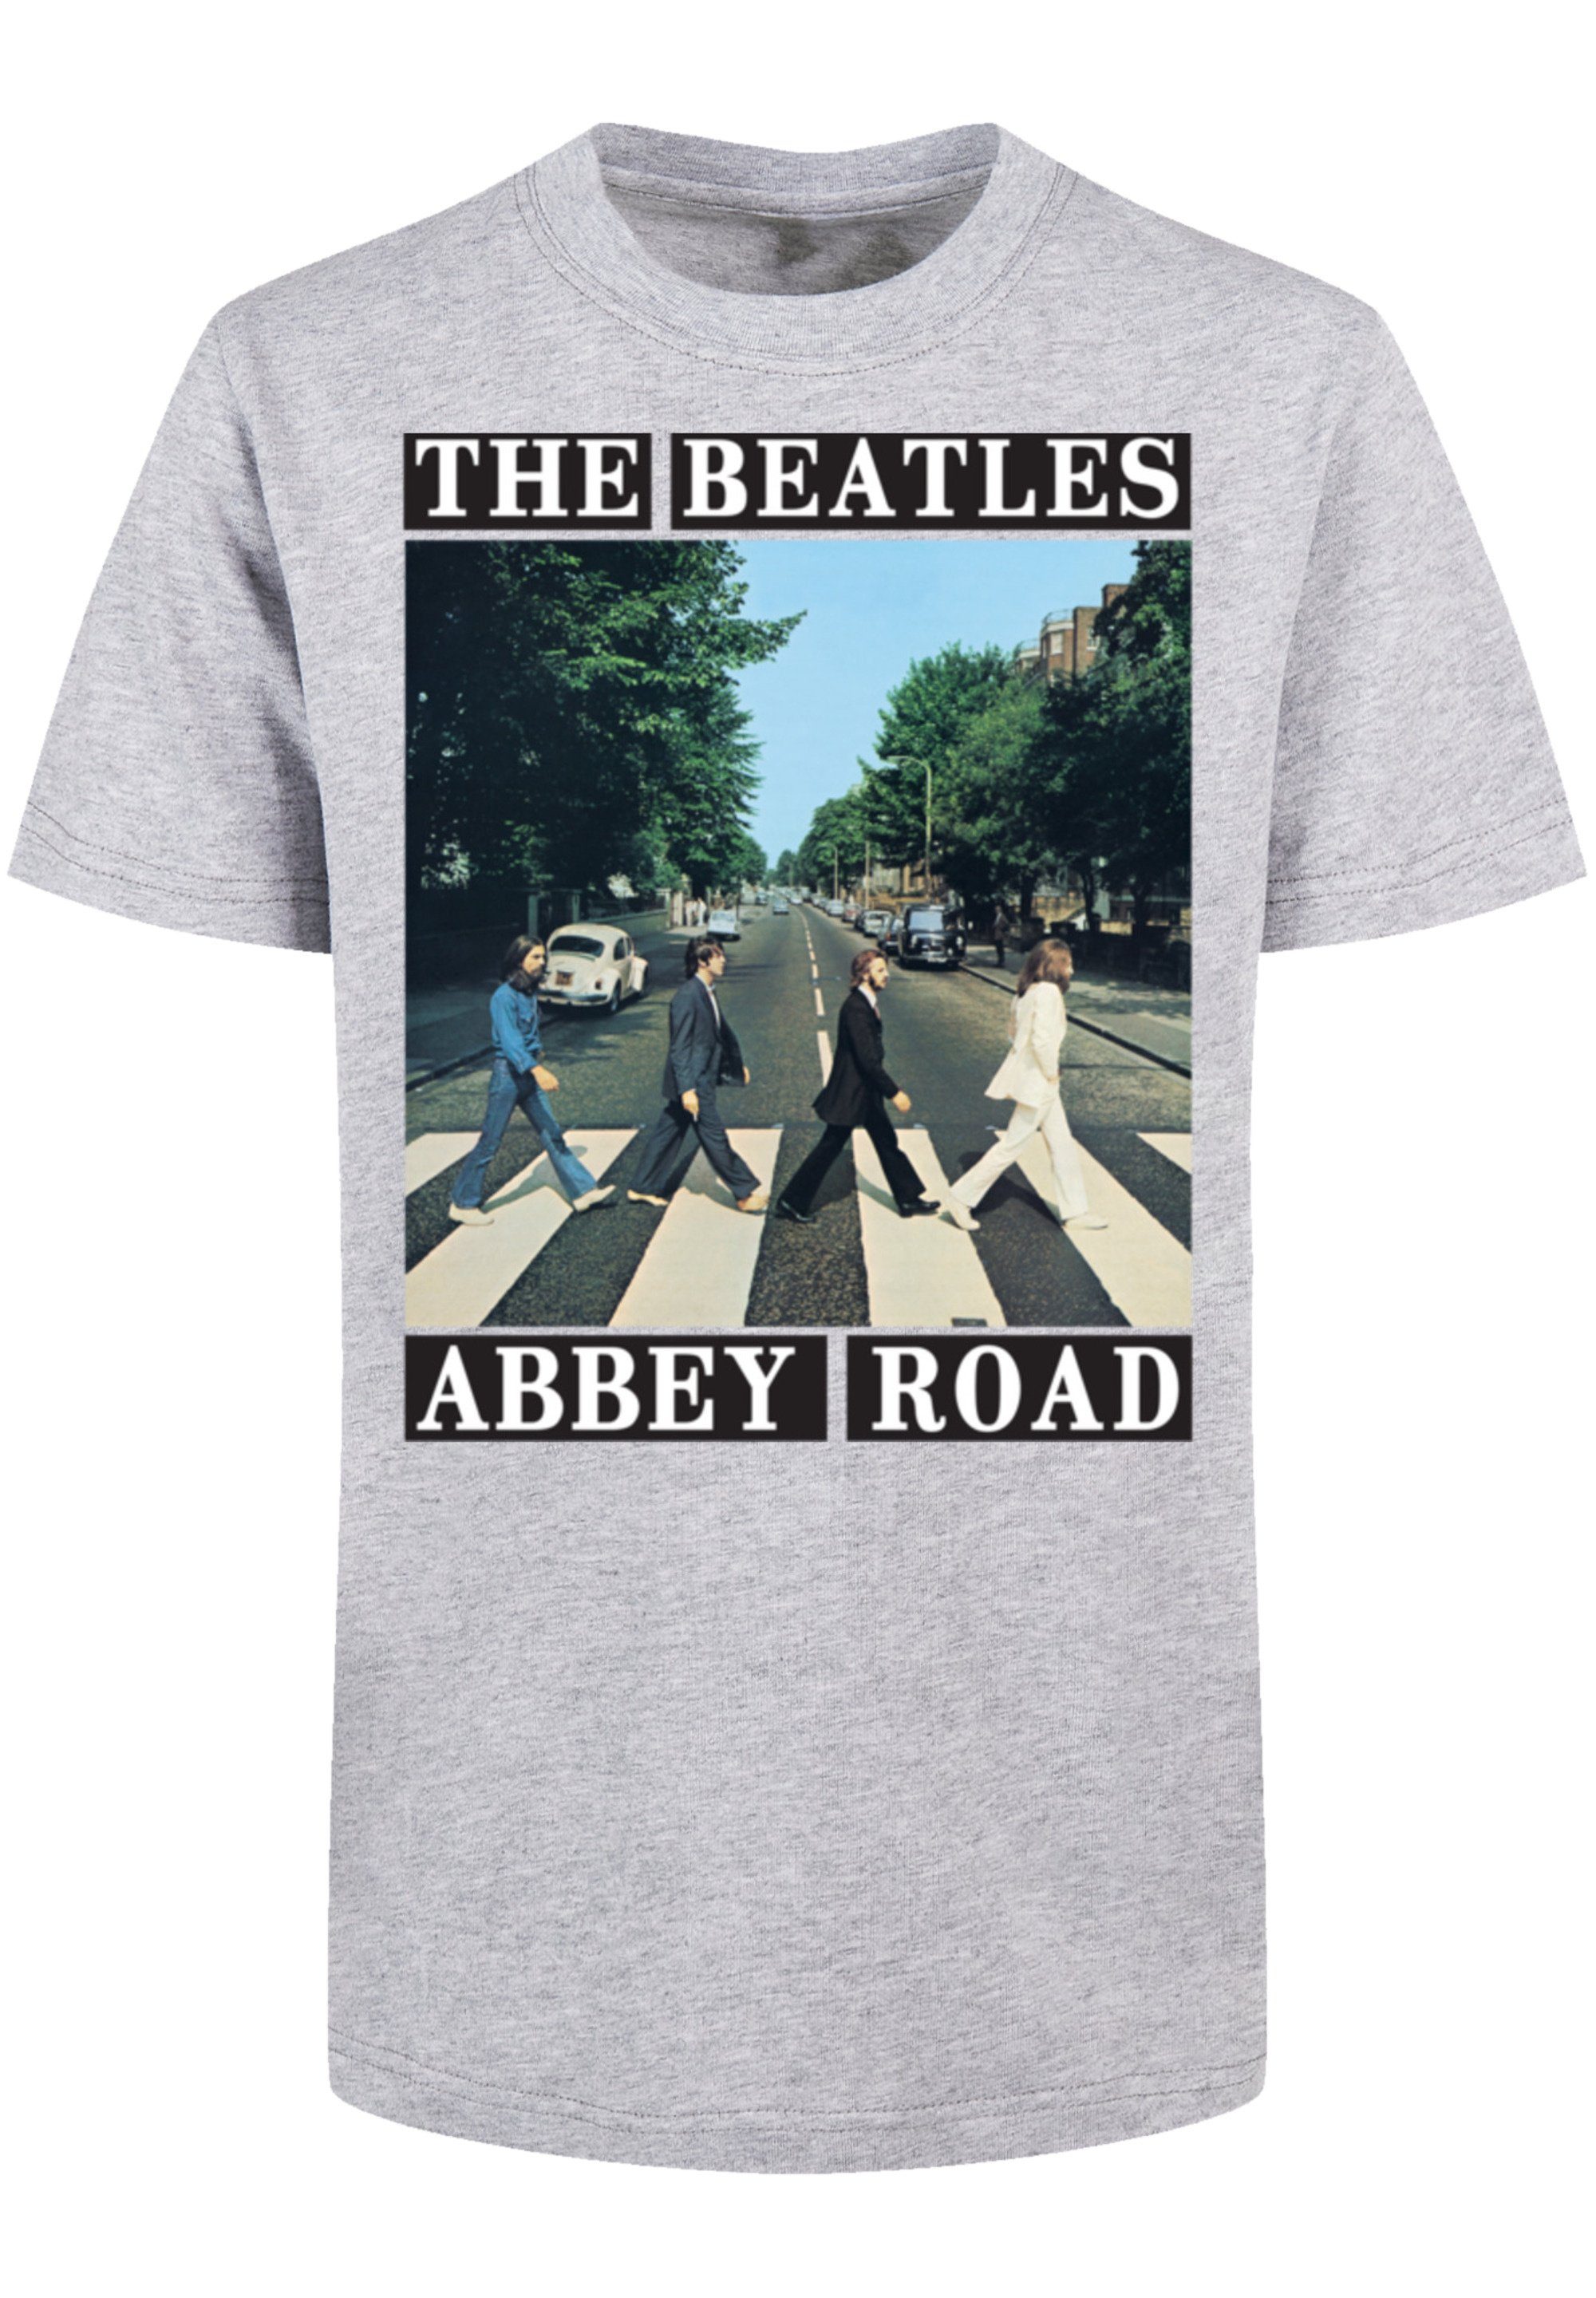 Abbey Beatles hohem Sehr The Road Print, T-Shirt mit weicher Tragekomfort Baumwollstoff F4NT4STIC